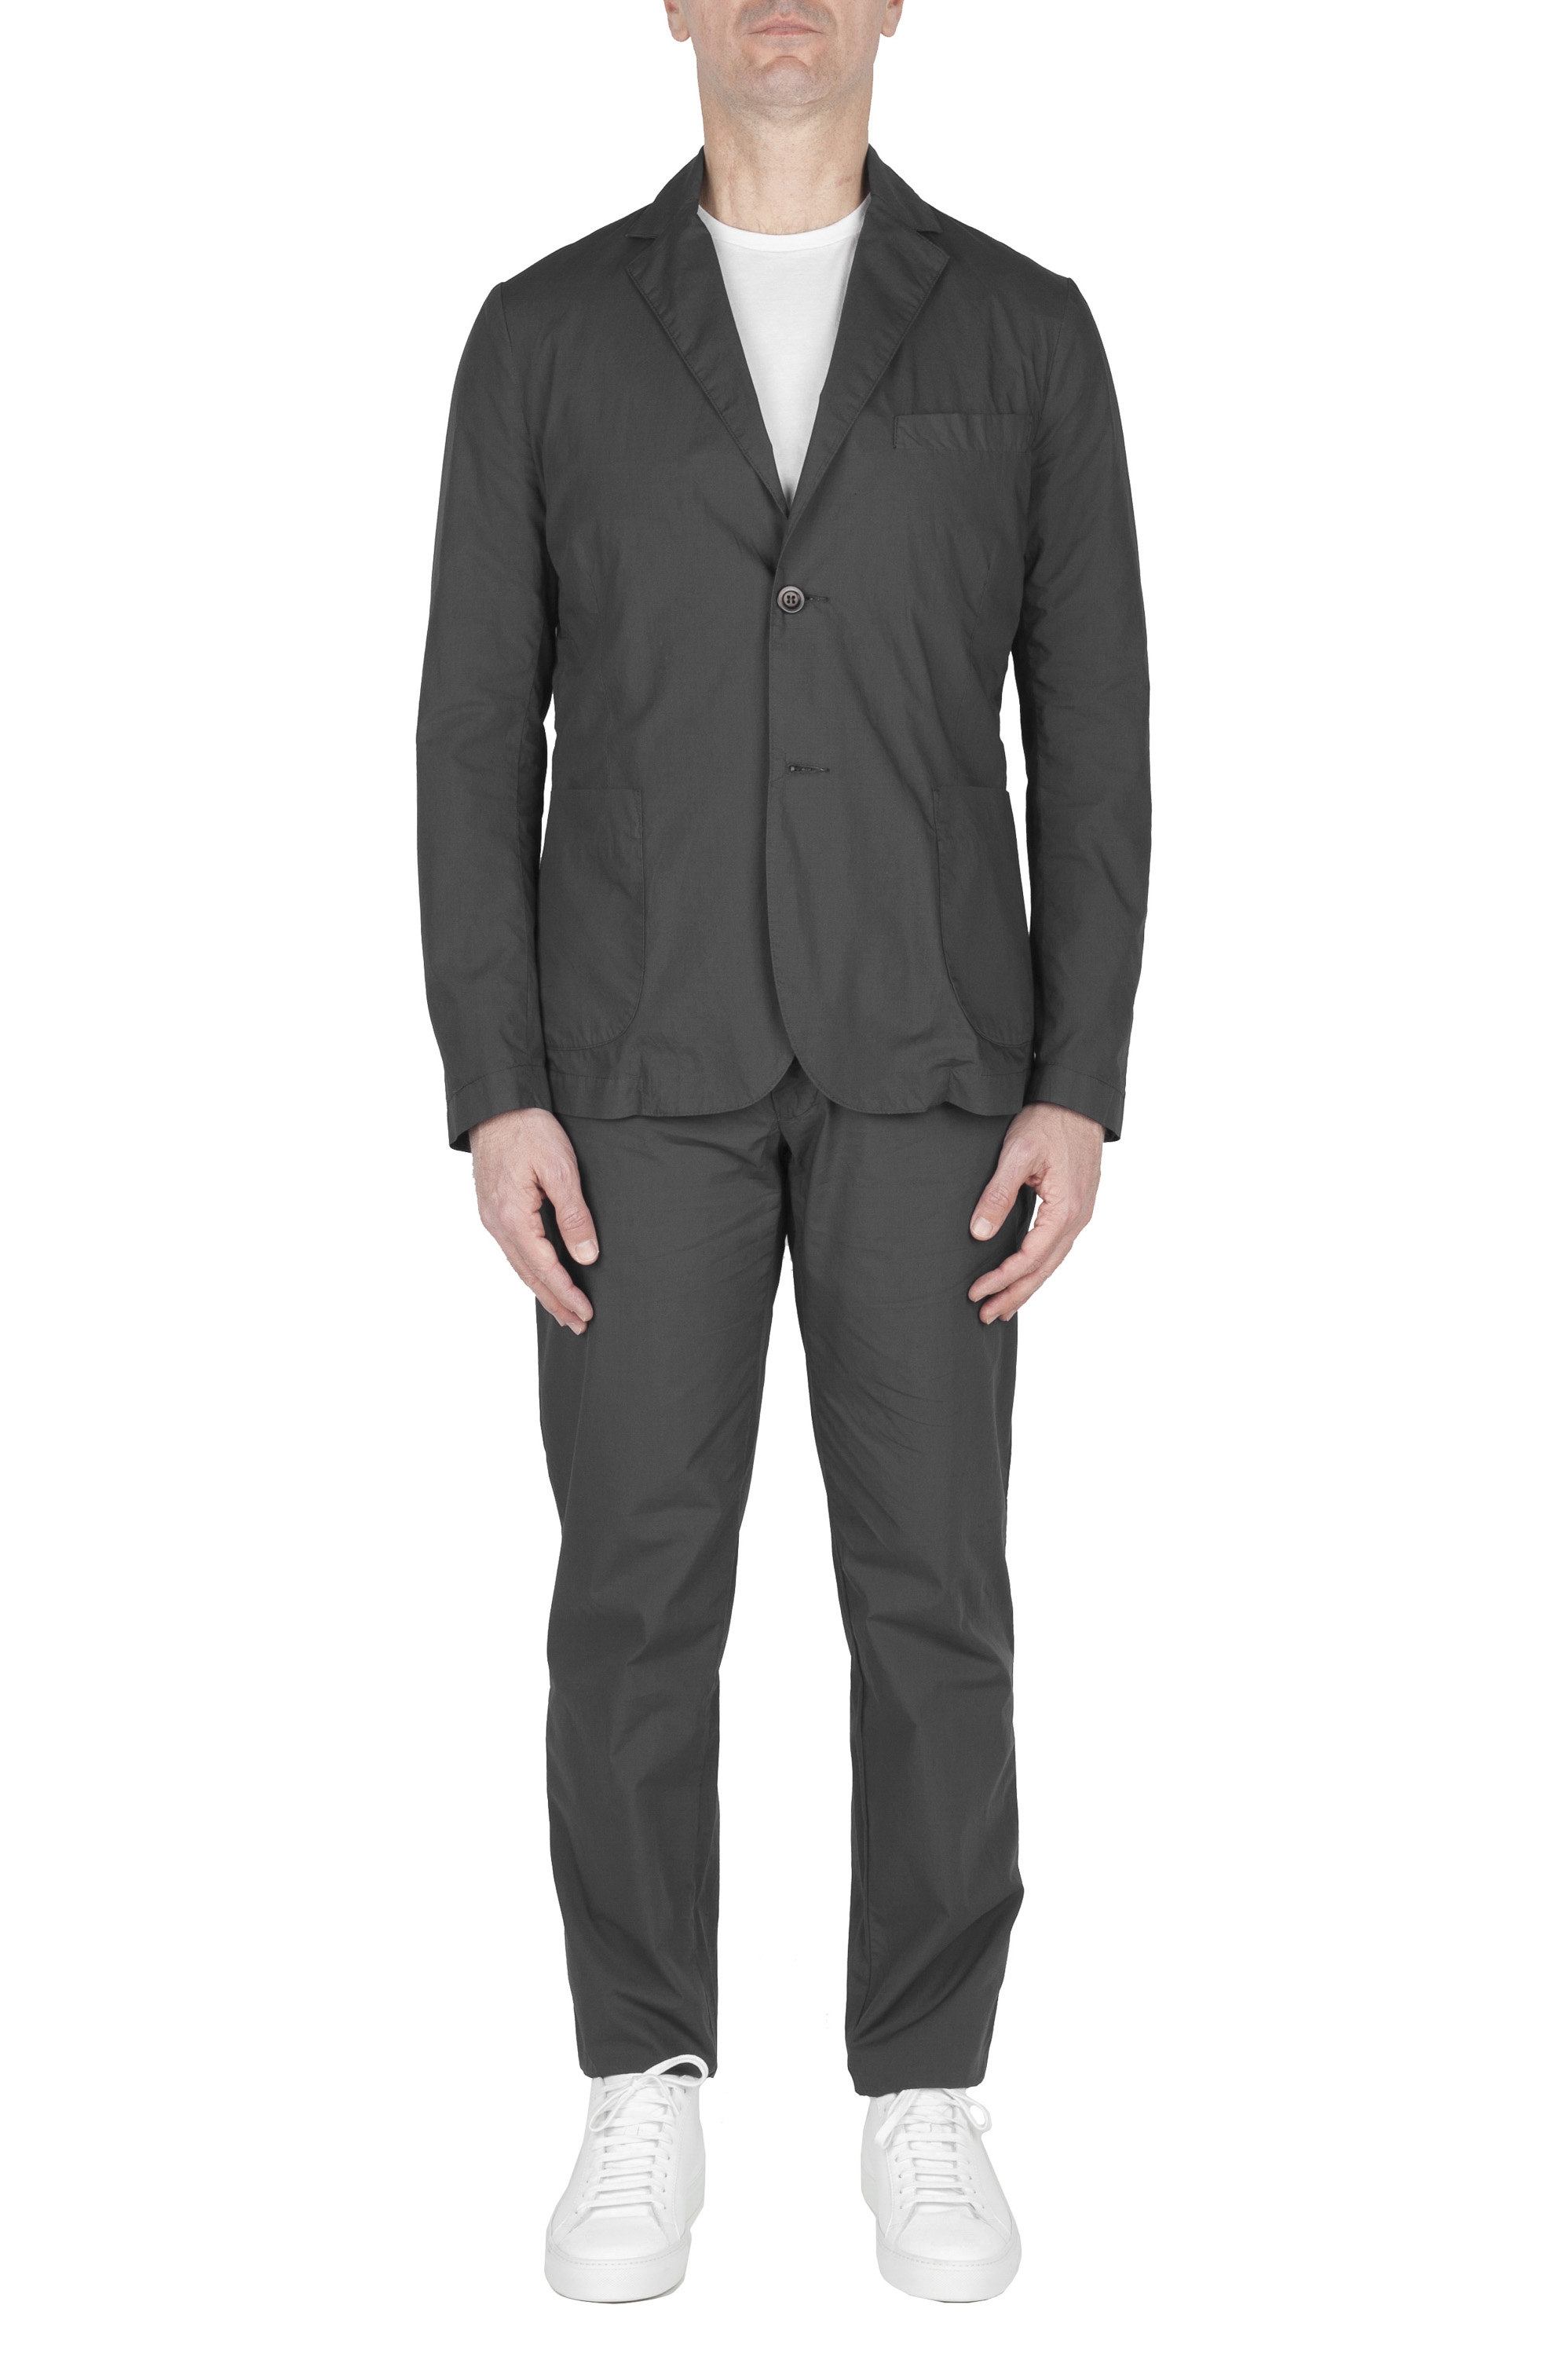 SBU 02839_2020SS Chaqueta y pantalón de traje deportivo de algodón gris oscuro 01